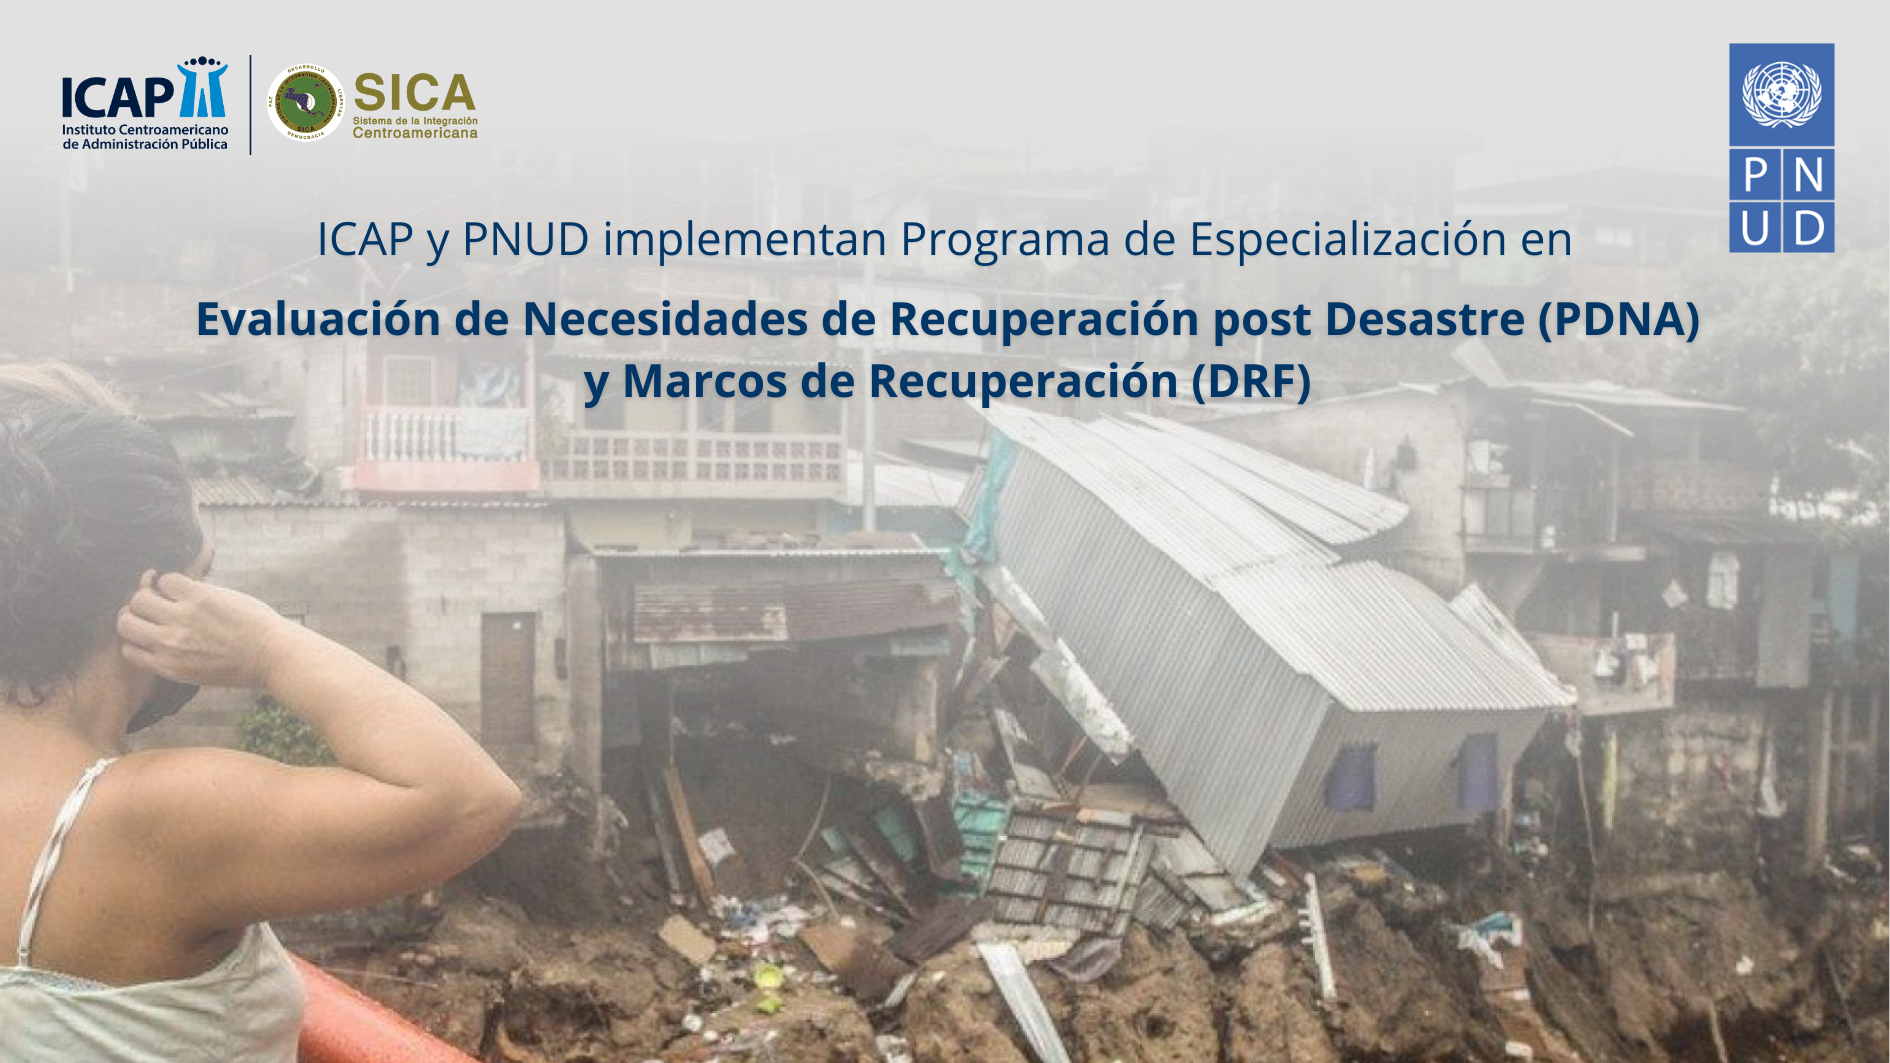 ICAP y PNUD implementan Programa de Especialización en Evaluación de Necesidades de Recuperación post Desastre (PDNA) y Marcos de Recuperación (DRF)